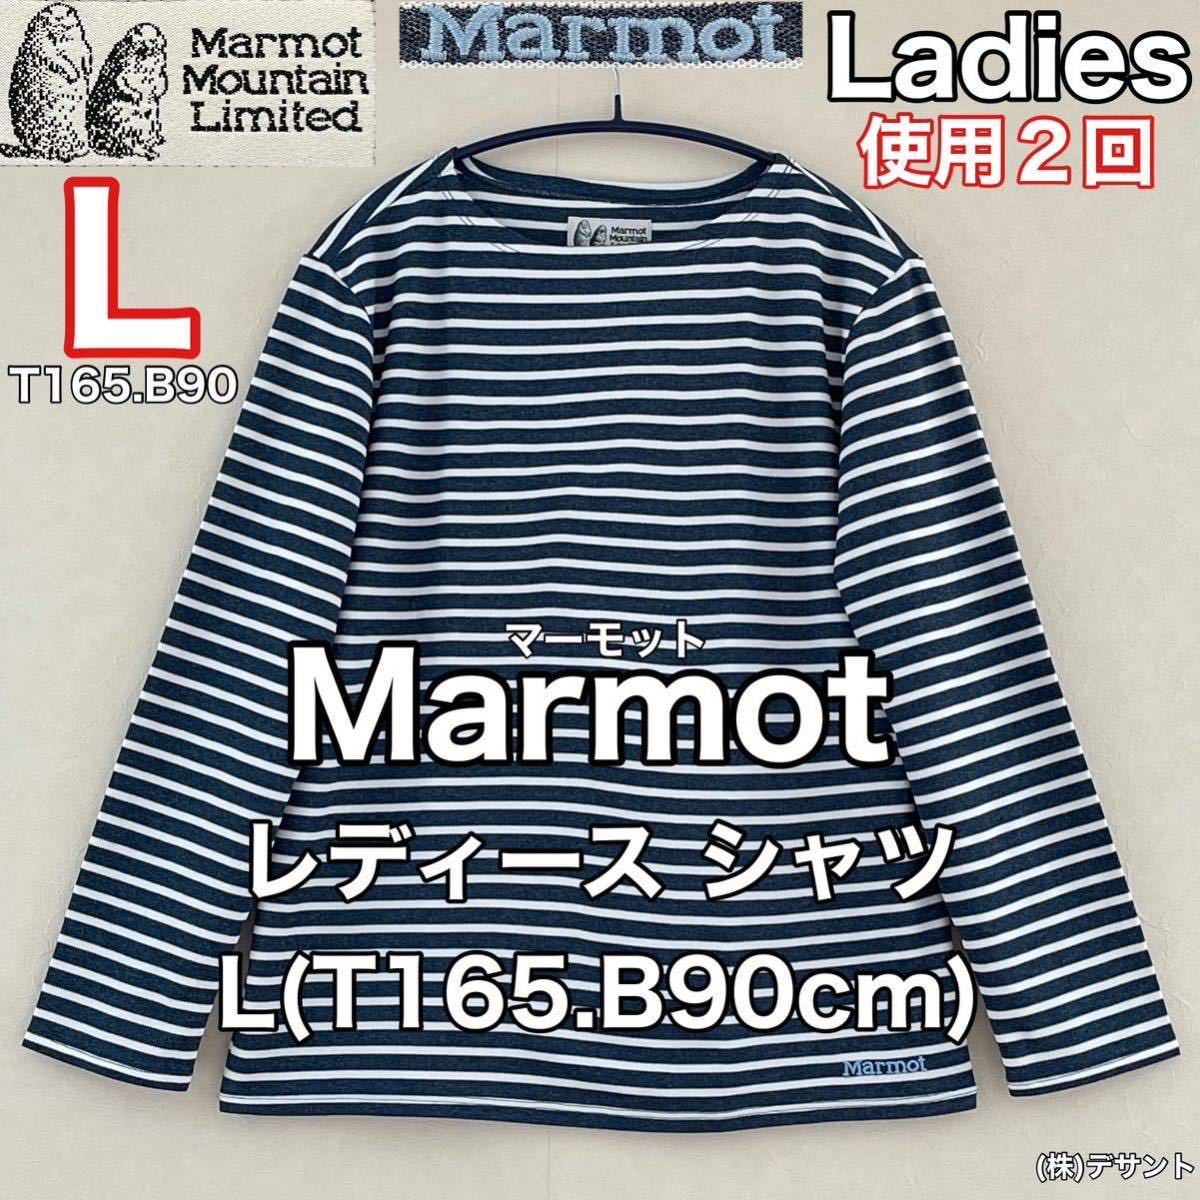 超美品 Marmot(マーモット)レディース 長袖 シャツ L(T165.B90cm)使用2回 ネイビー ボーダー カットソー アウトドア スポーツ (株)デサント